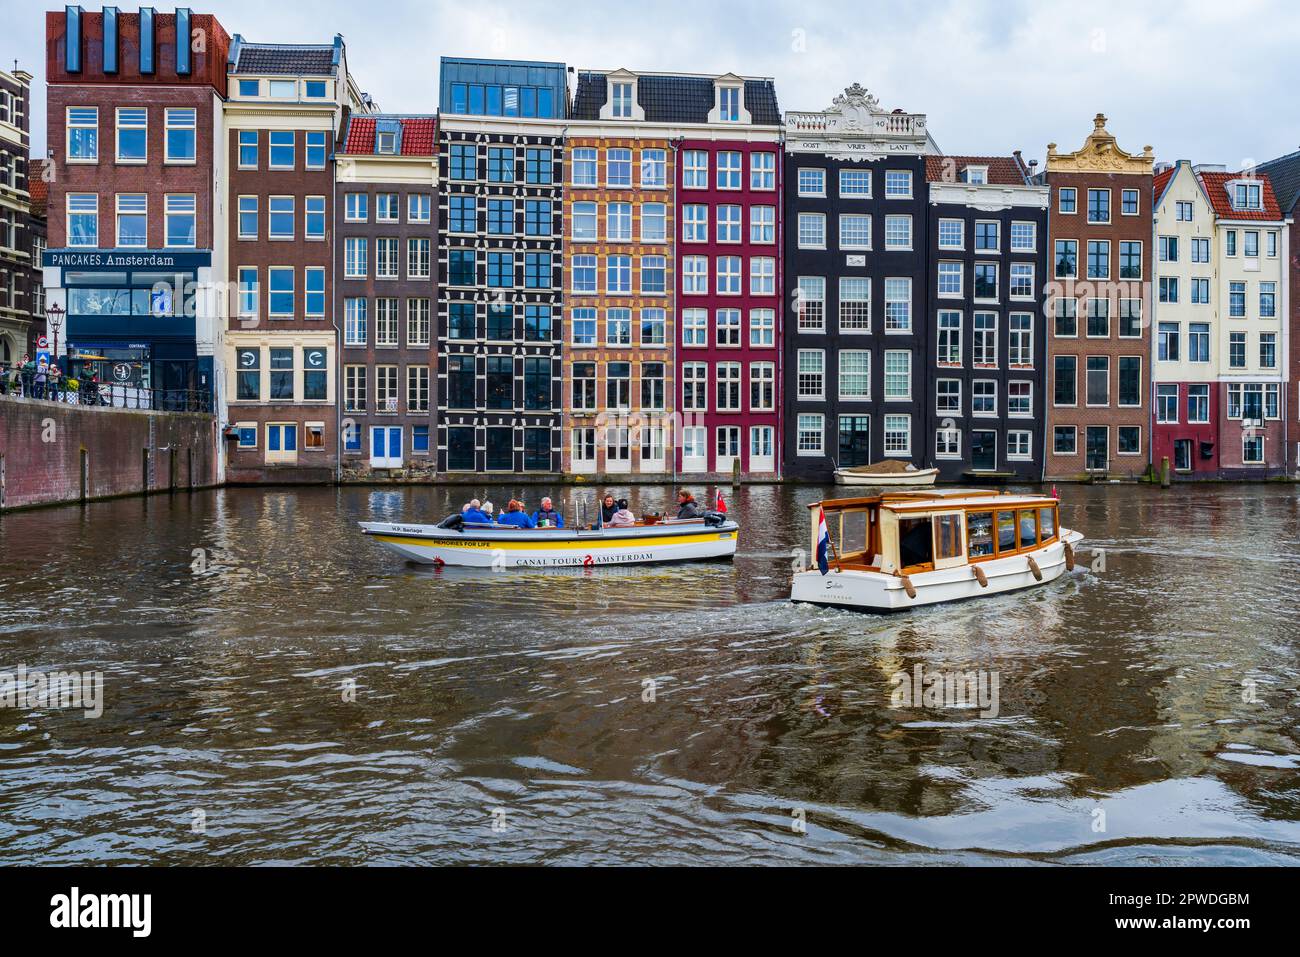 AMSTERDAM, HOLLAND - 17. APRIL 2023: Touristen auf Kreuzfahrtschiffen machen eine Fahrt entlang der Kanäle in der niederländischen Hauptstadt, die für ihr aufwändiges Kanalsystem bekannt ist Stockfoto